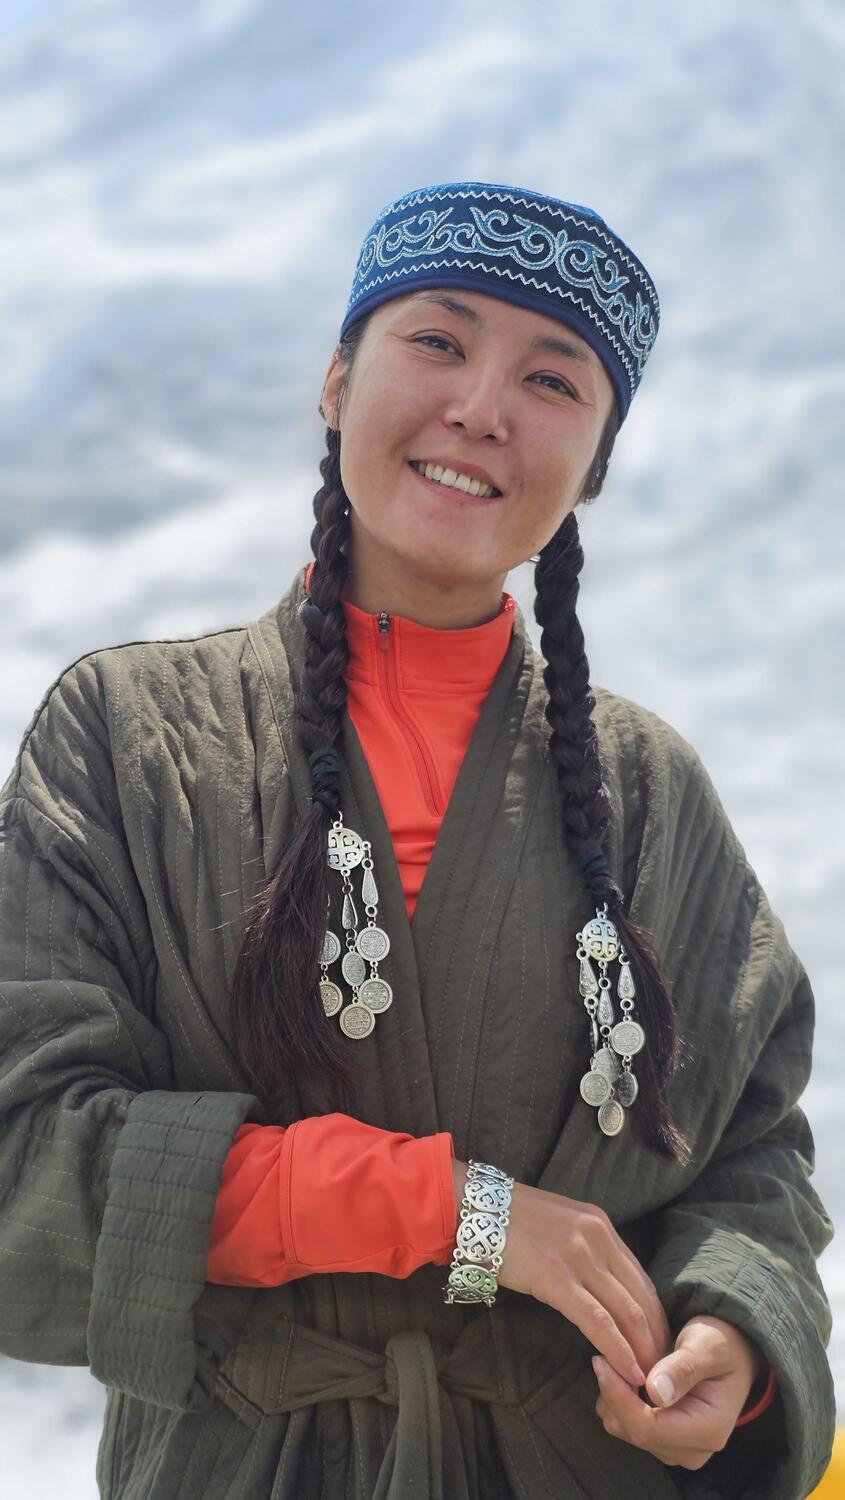 Впервые в истории альпинистка из Казахстана покорила Эверест. Фото: Kazakh Everest Team